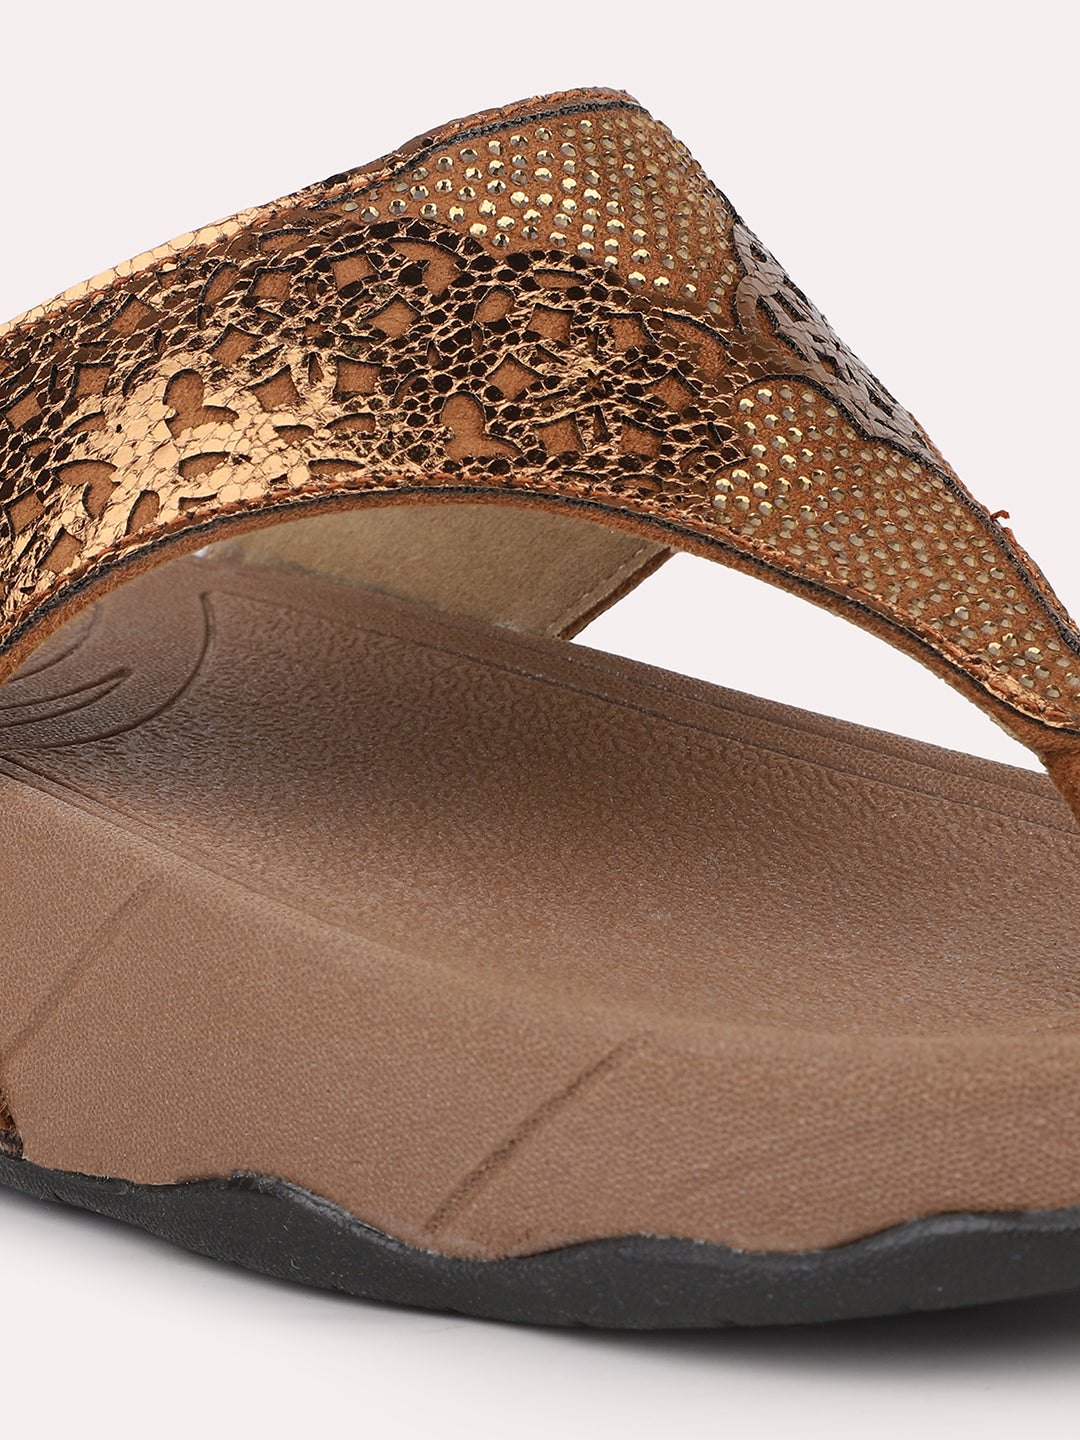 Women Antique Textured Embellished Open Toe Comfort Heels